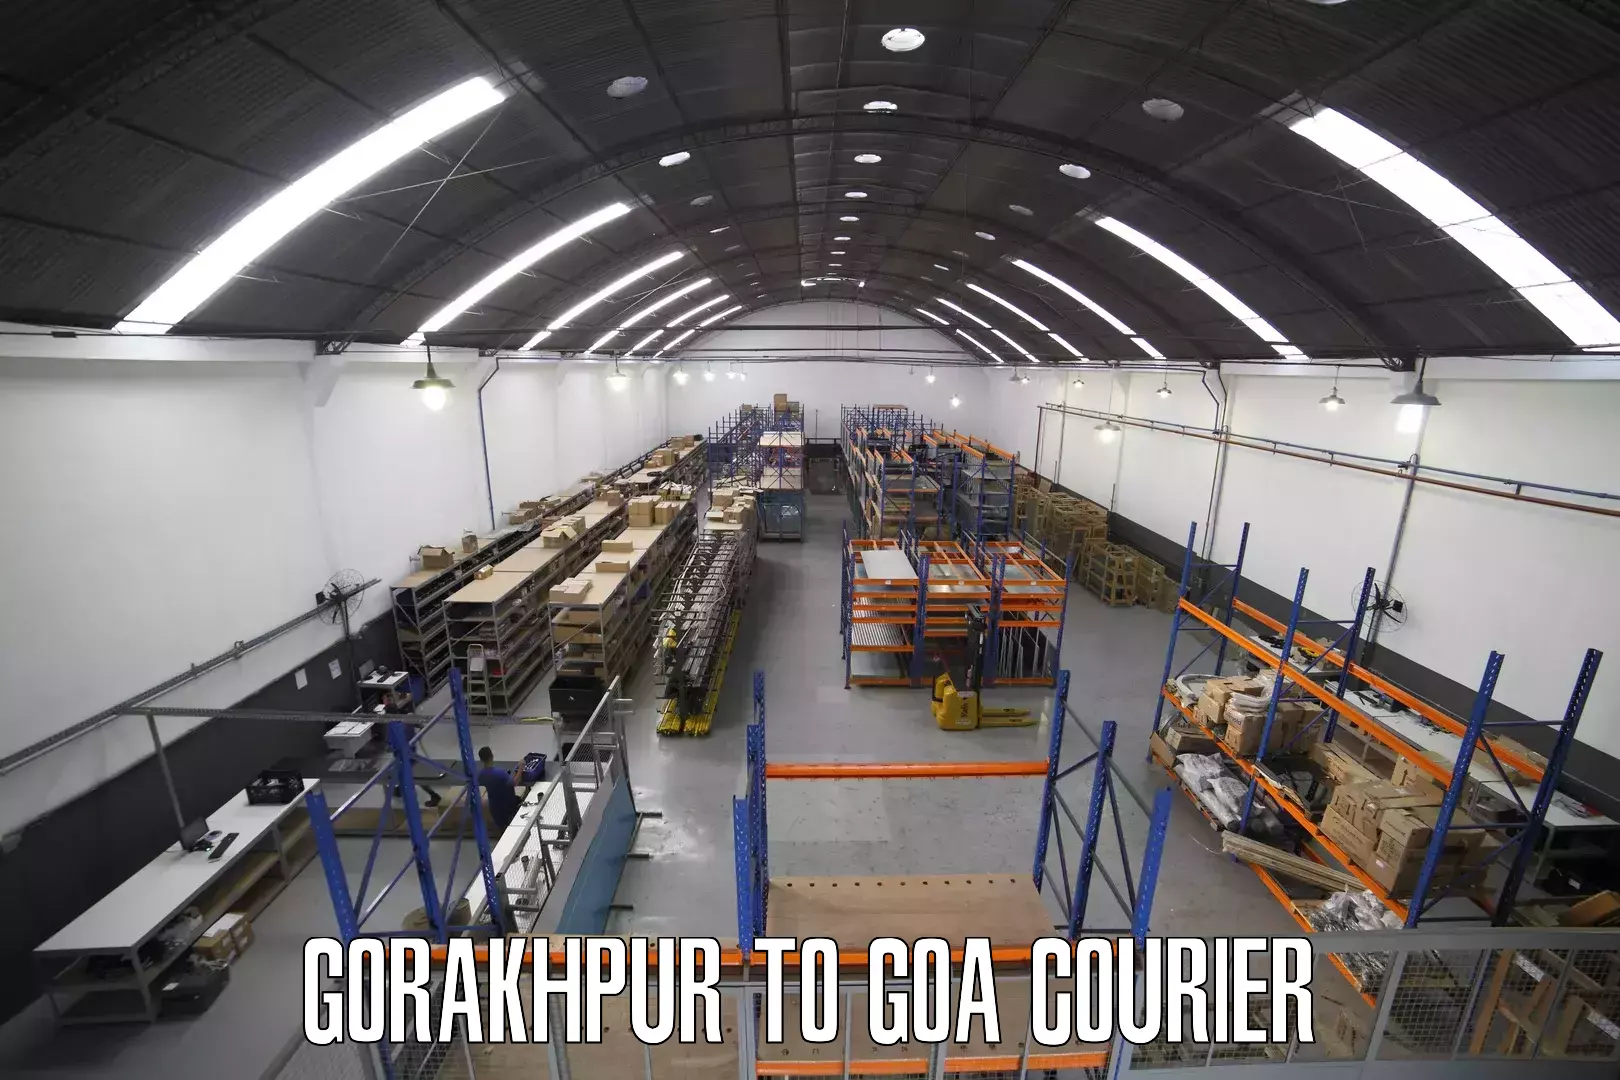 Digital courier platforms Gorakhpur to Ponda